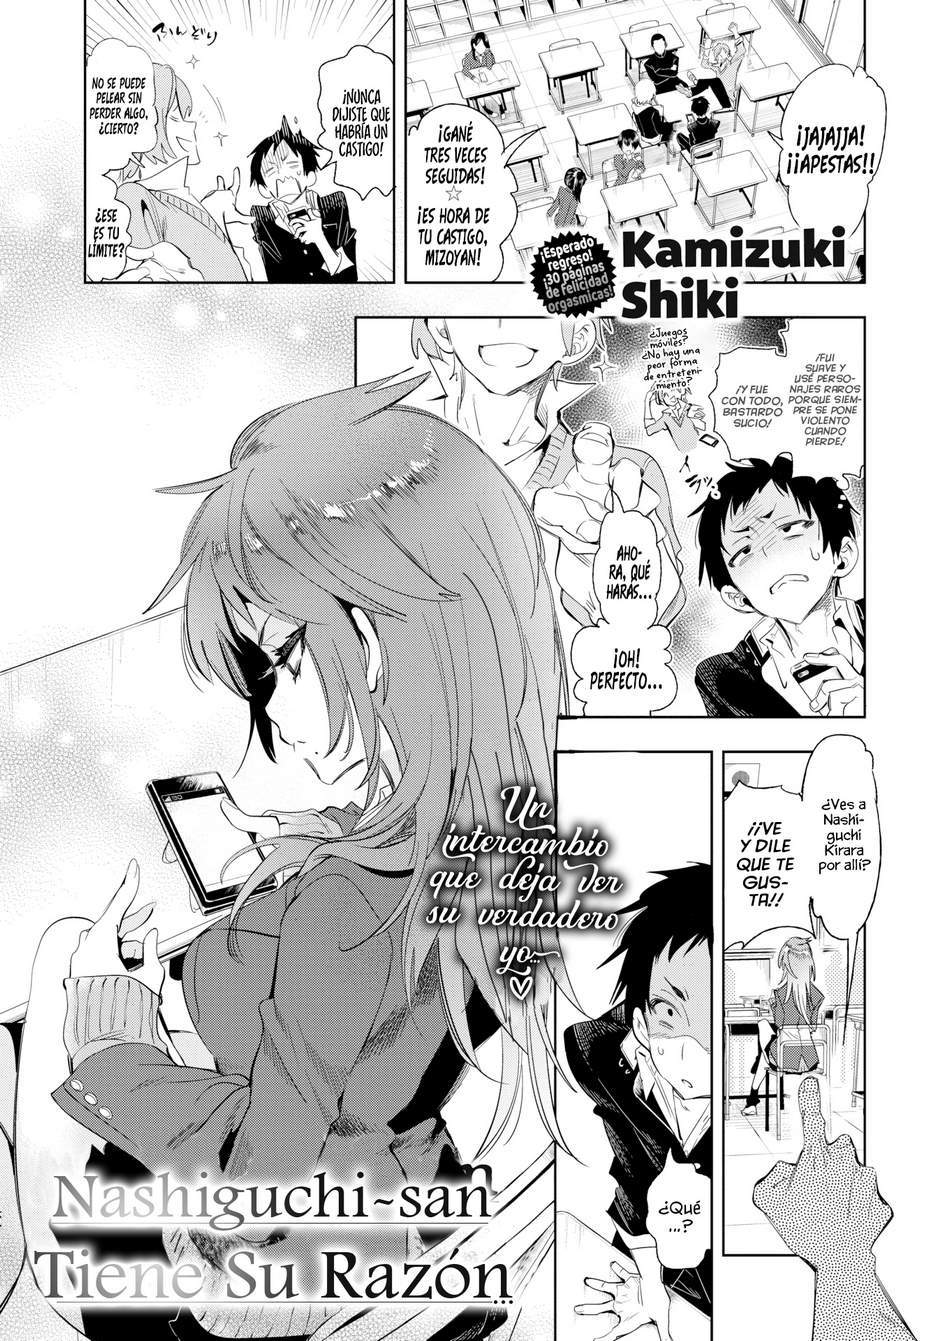 Nashiguchi-san tiene su razón - Page #1